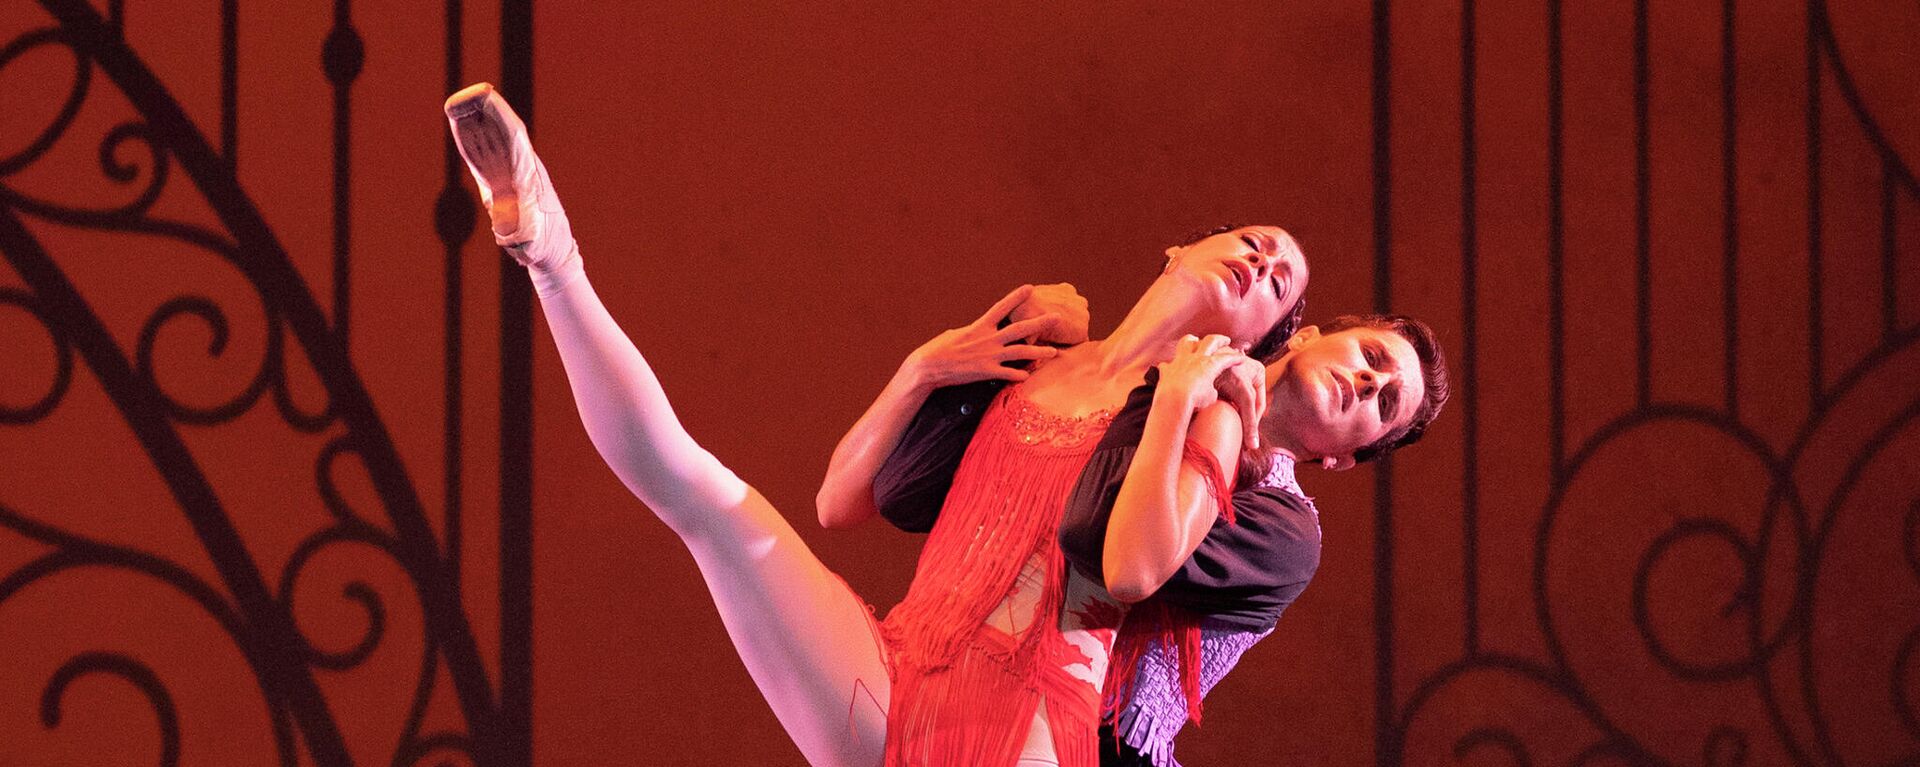 Los primeros bailarines Anette Delgado y Dani Hernández durante su interpretación del ballet 'Carmen' - Sputnik Mundo, 1920, 21.07.2021